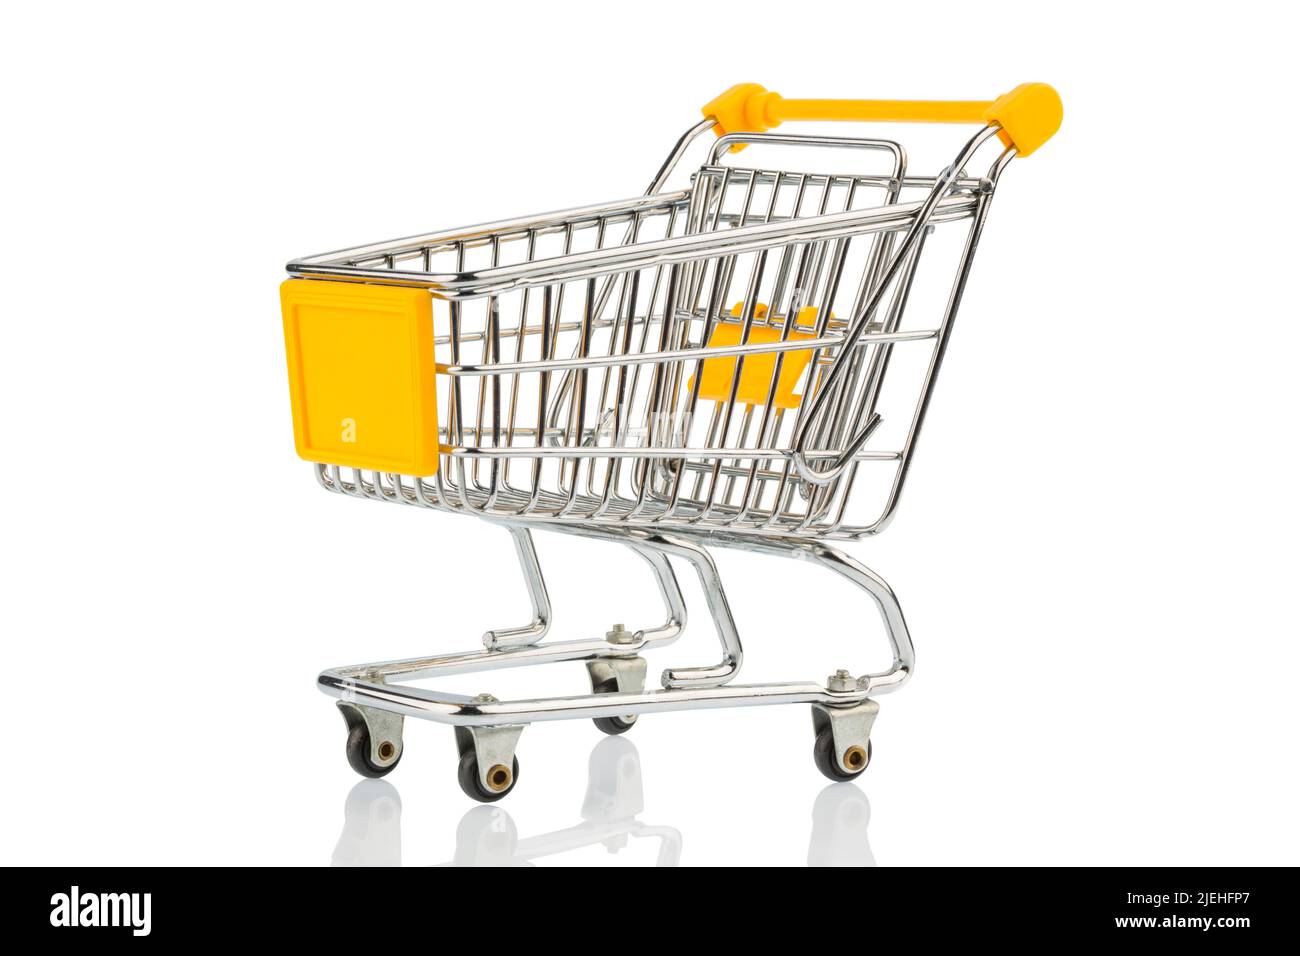 Ein leerer Einkaufswagen auf weissem Hintergrund. Symbolfoto für Einkaufen, Shoppen, Online-Shopping, Stock Photo